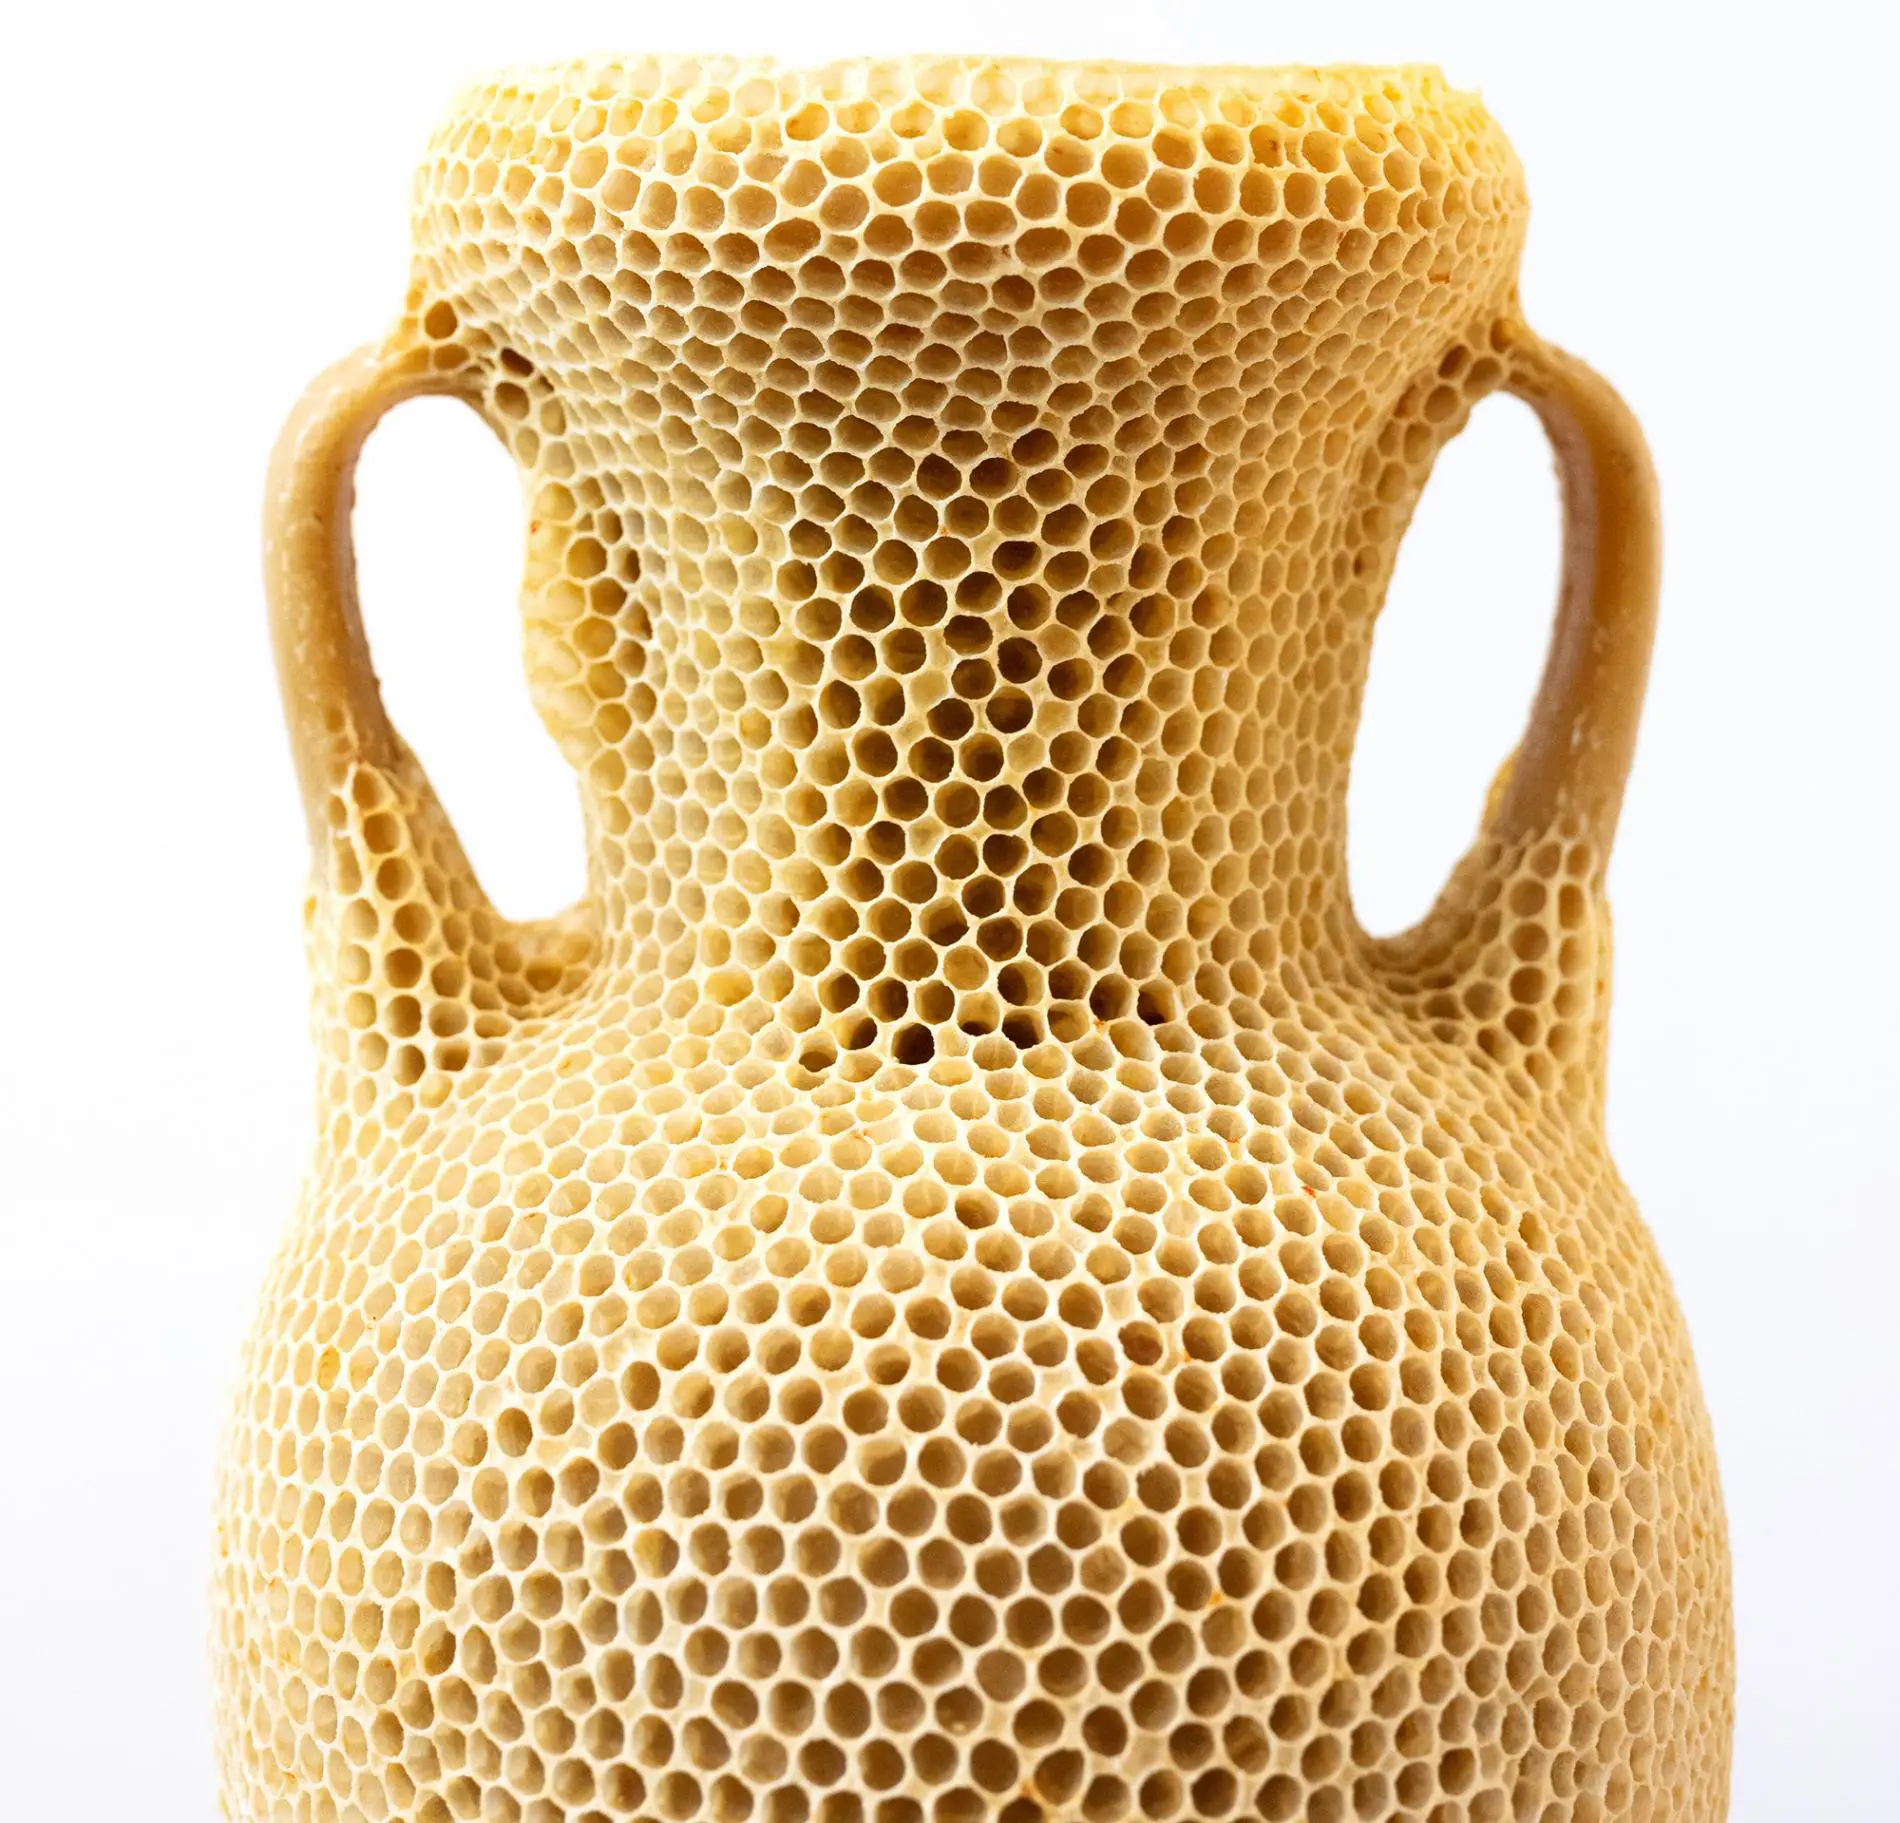 The Honeycomb Amphora tomas libertini